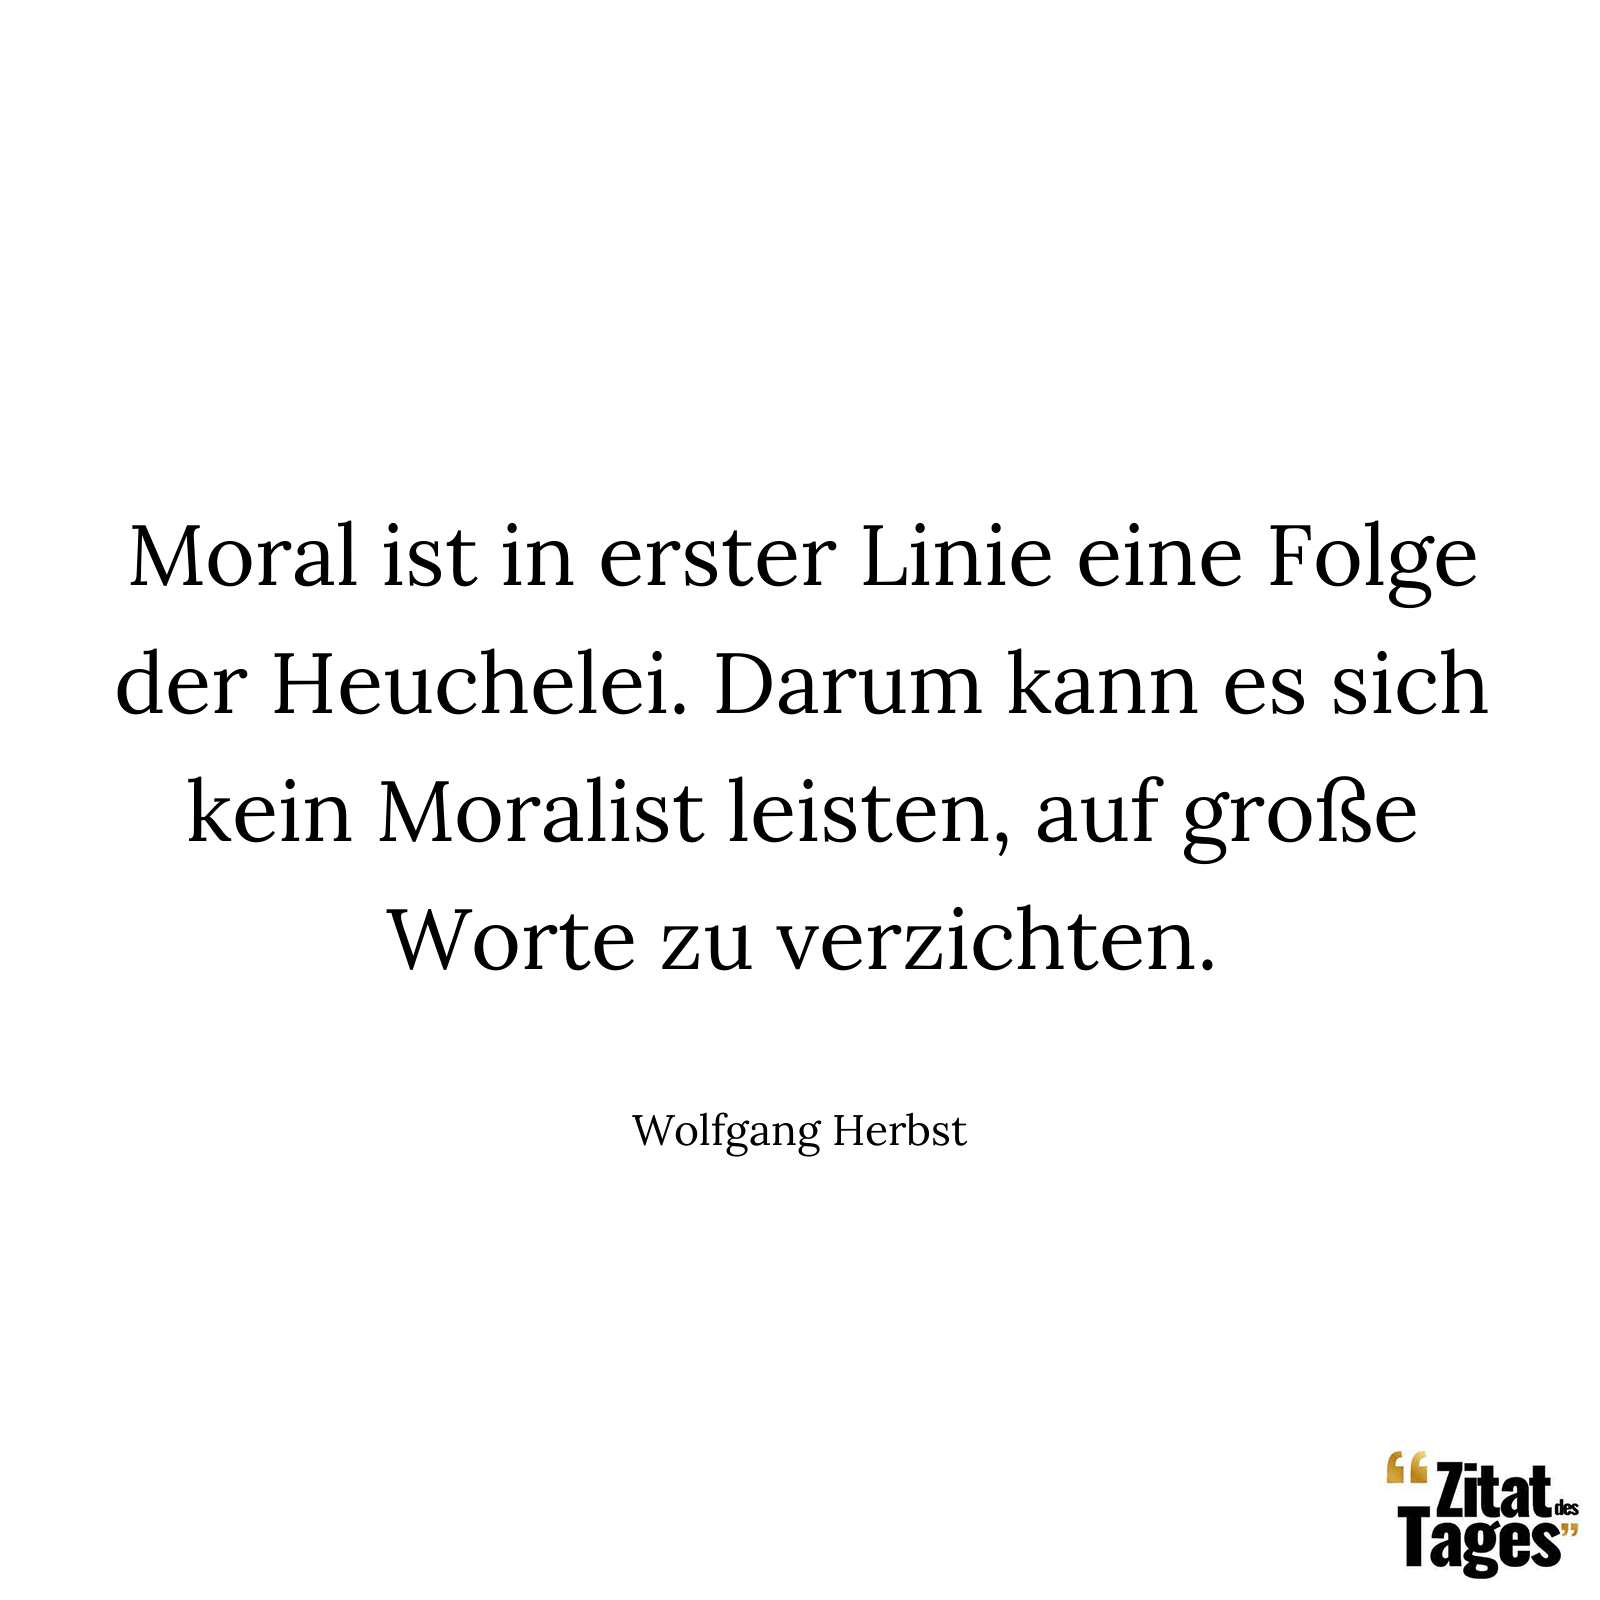 Moral ist in erster Linie eine Folge der Heuchelei. Darum kann es sich kein Moralist leisten, auf große Worte zu verzichten. - Wolfgang Herbst